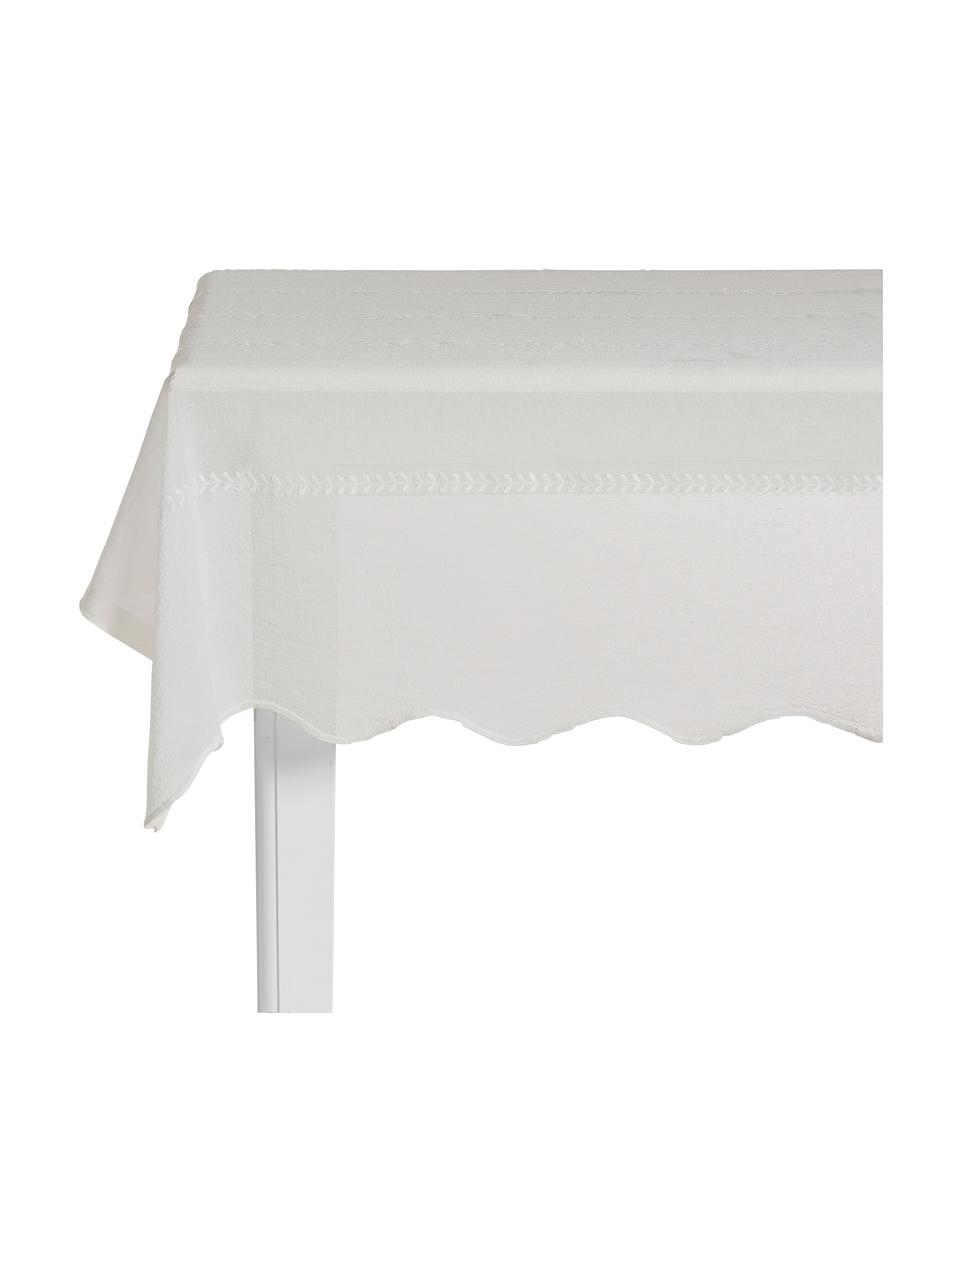 Geborduurd tafelkleed Bilia in wit met geschulpte zoom, 100% polyester, Gebroken wit, Voor 6 - 10 personen (B 160 x L 320 cm)